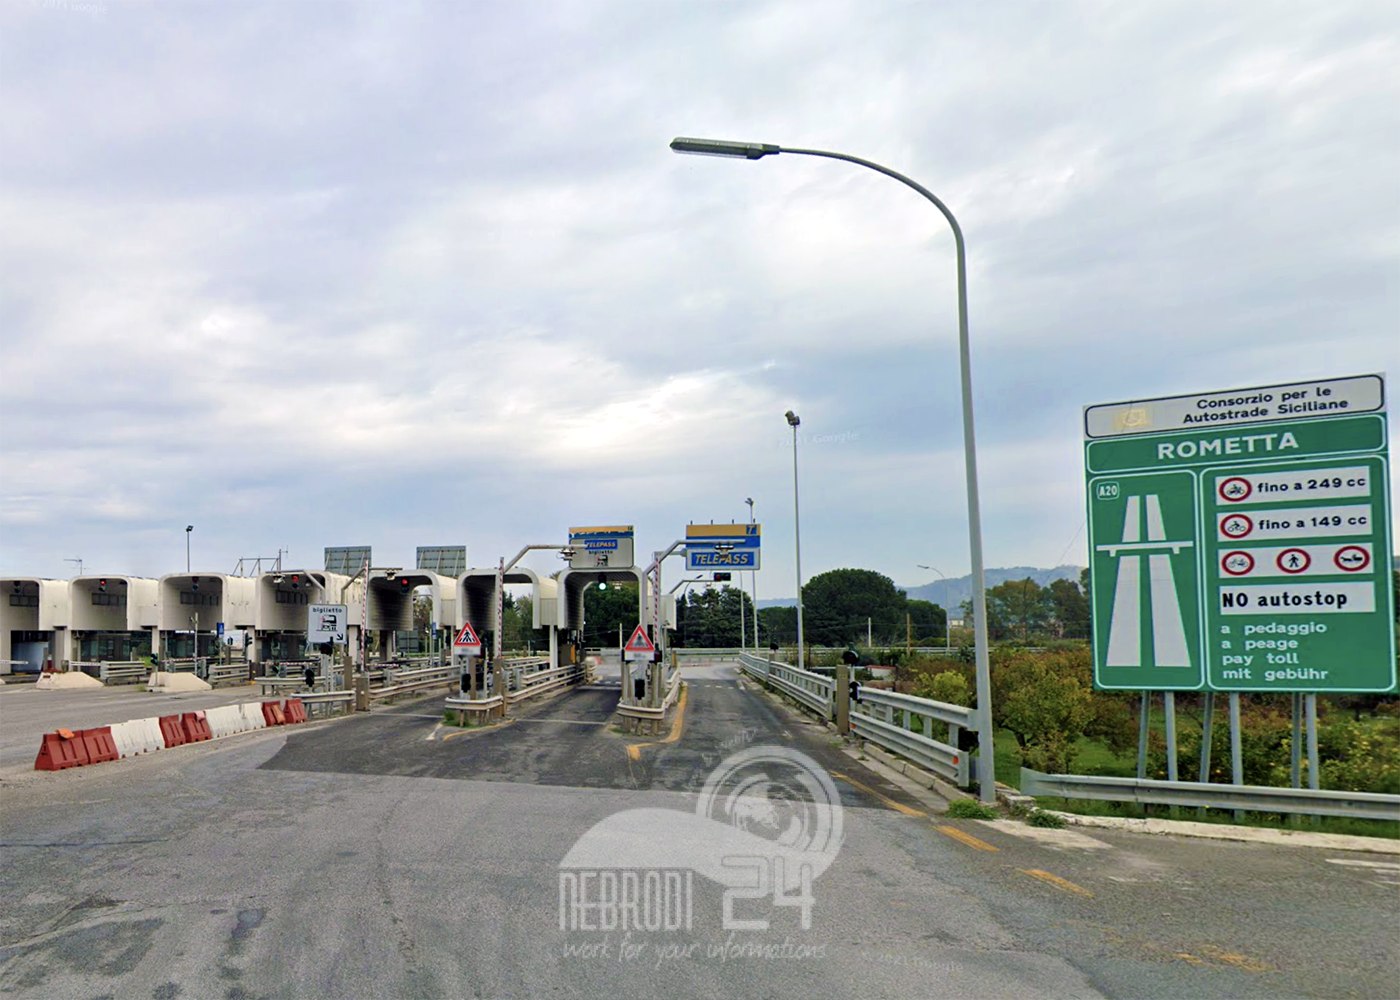 Autostrada A20: Chiuso tratto Rometta-Boccetta sino al 25 luglio dalle 22 alle 6